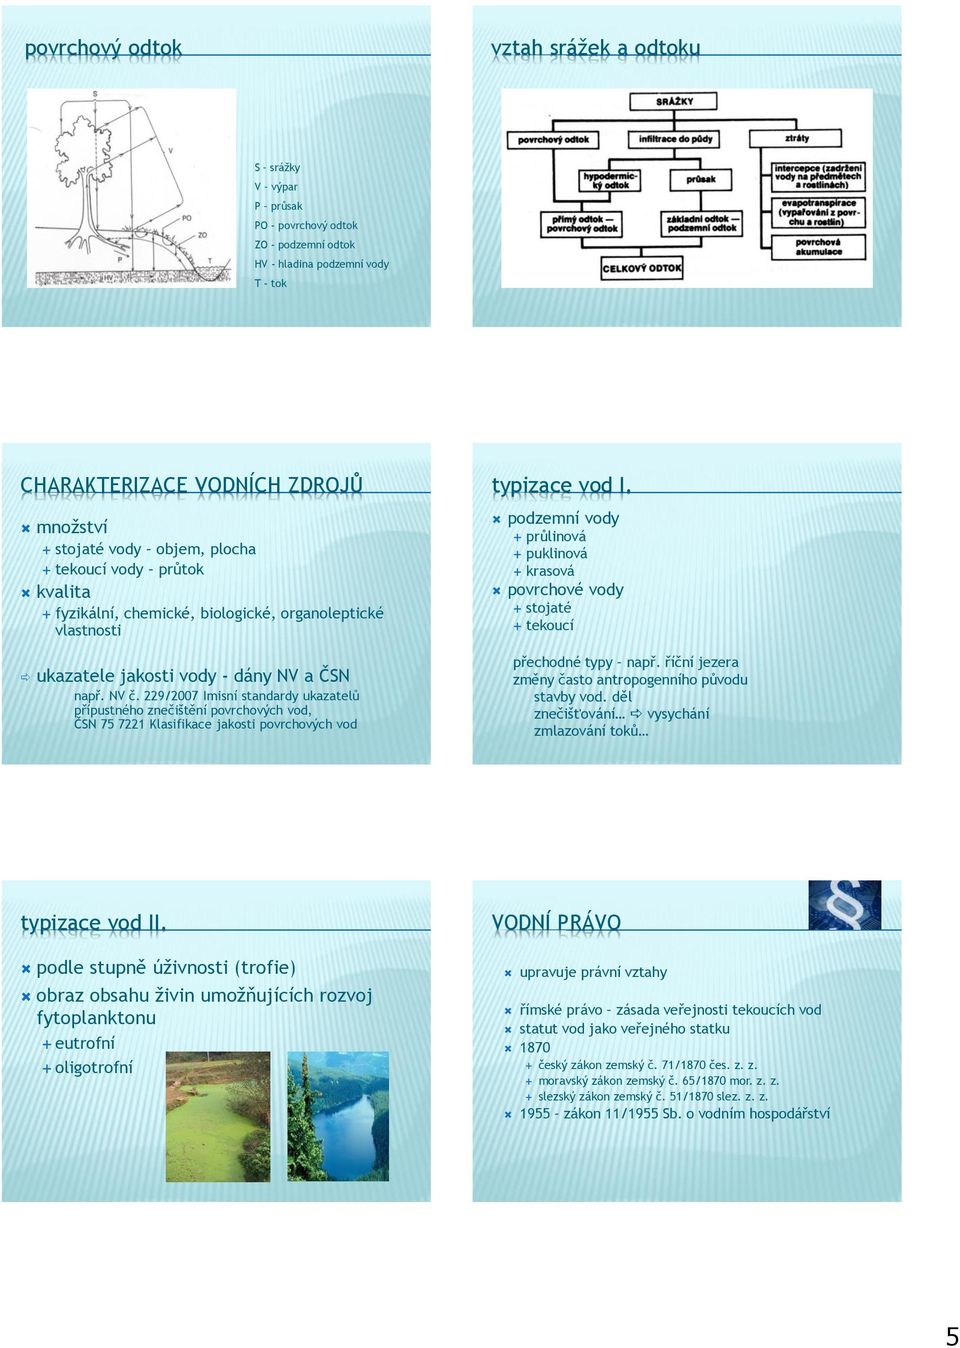 229/2007 Imisní standardy ukazatelů přípustného znečištění povrchových vod, ČSN 75 7221 Klasifikace jakosti povrchových vod typizace vod I.